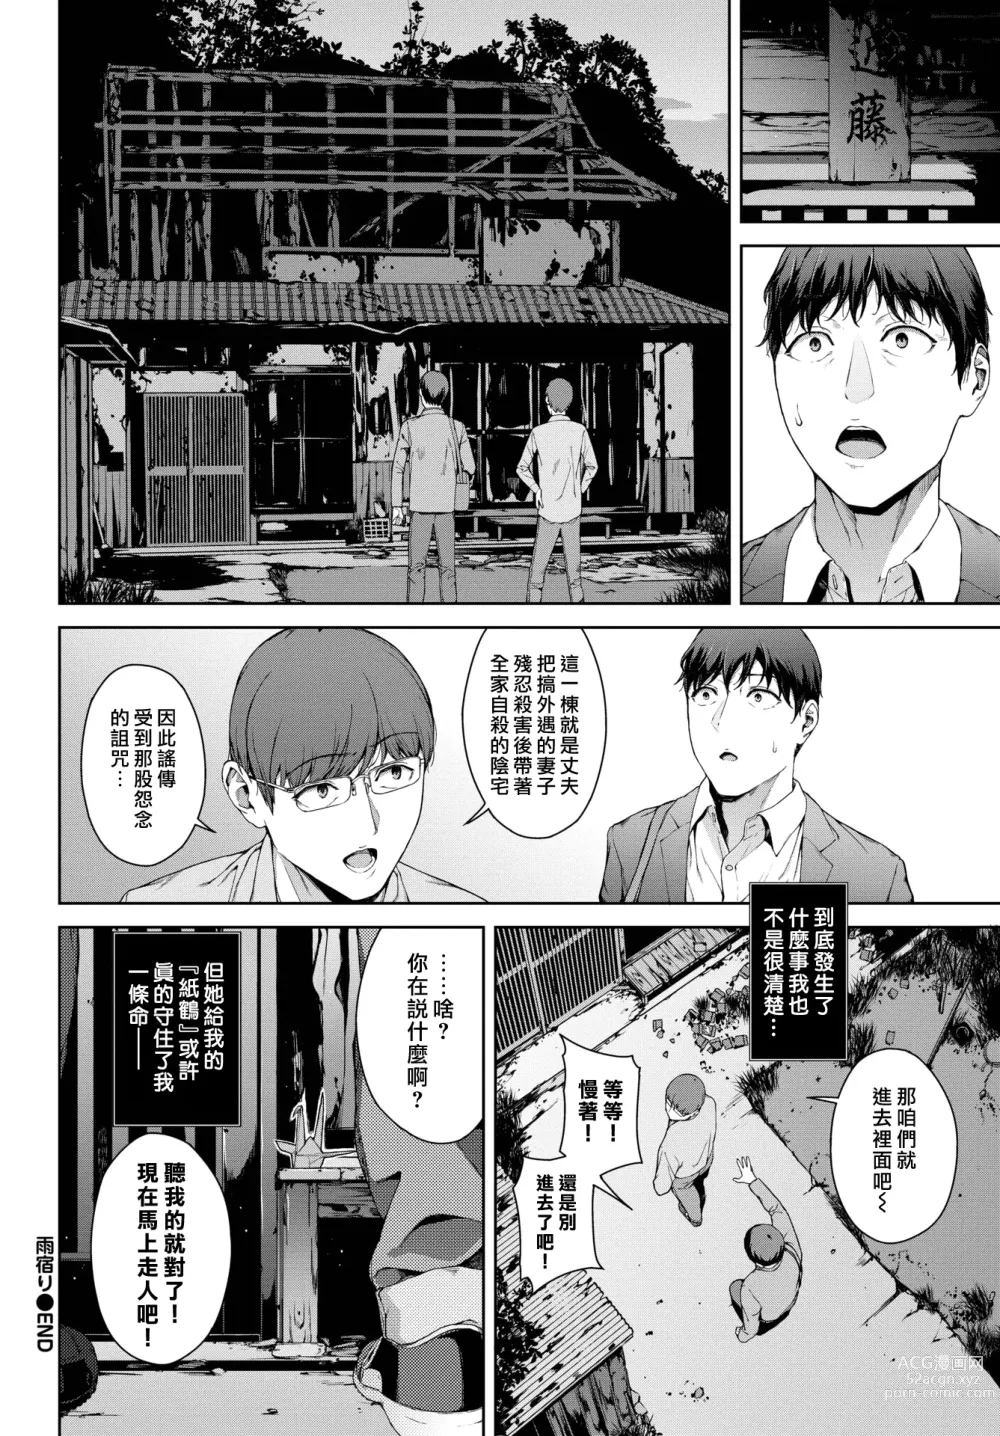 Page 22 of manga 躲雨